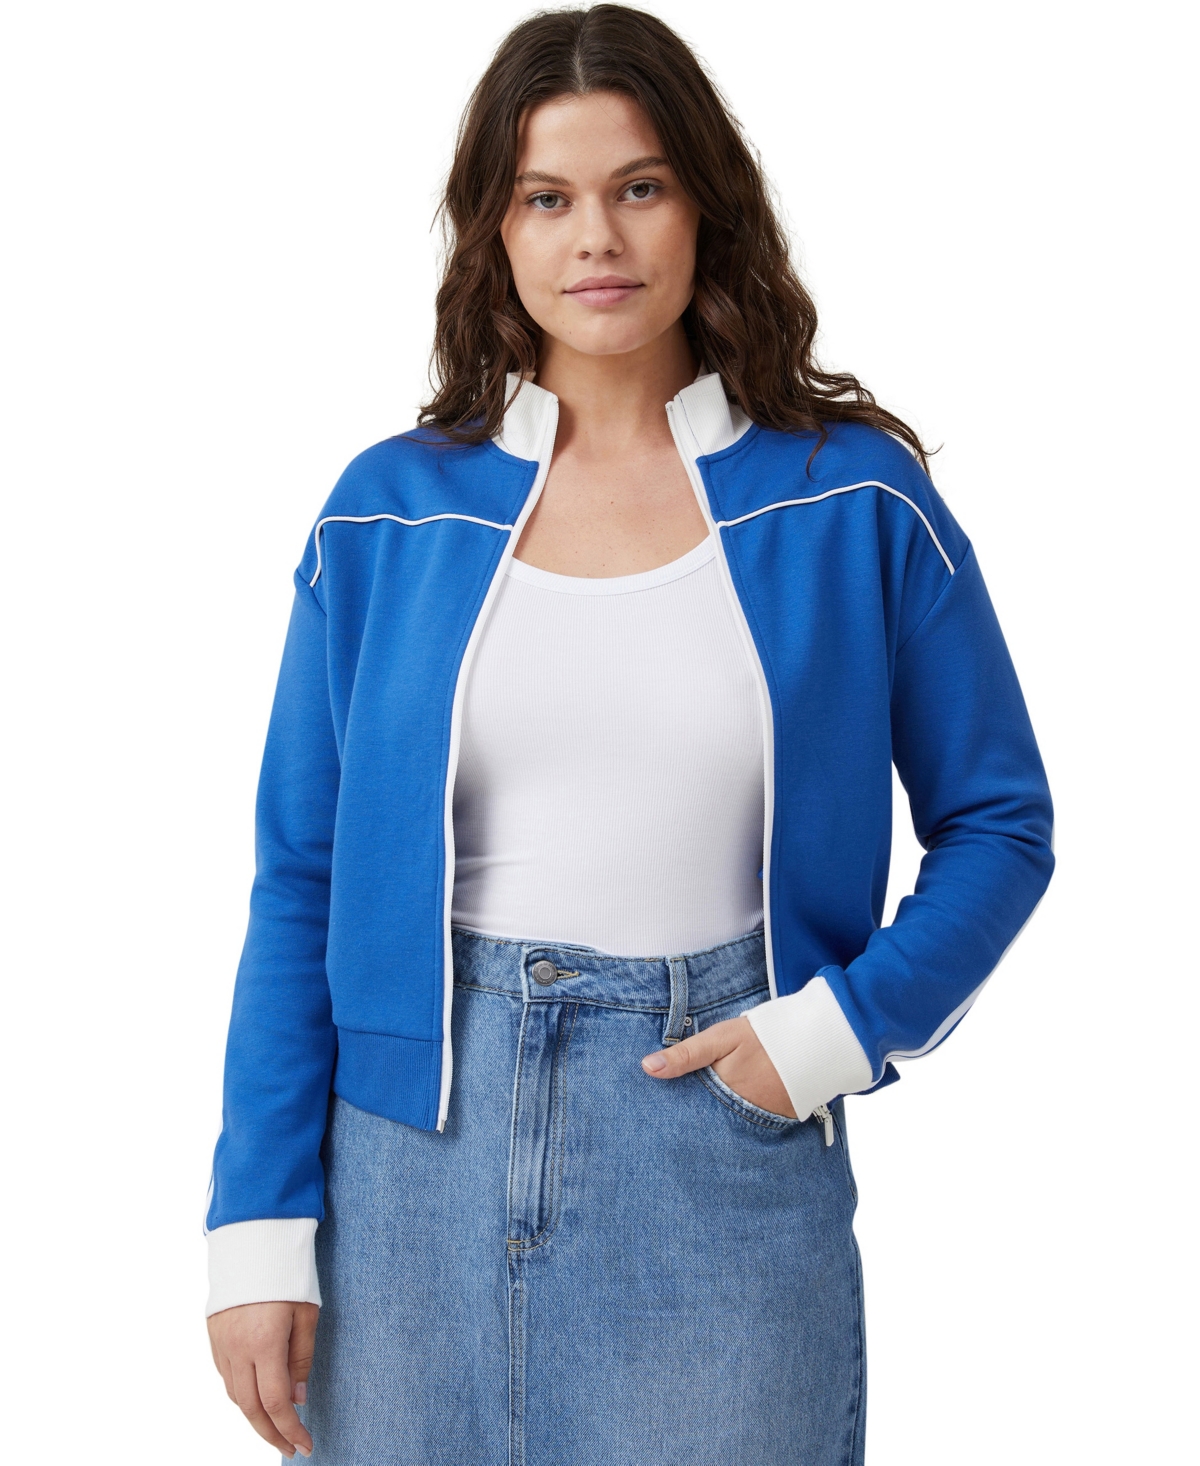 Women's Retro Sporty Zip Through Sweater - Blue Moon, White